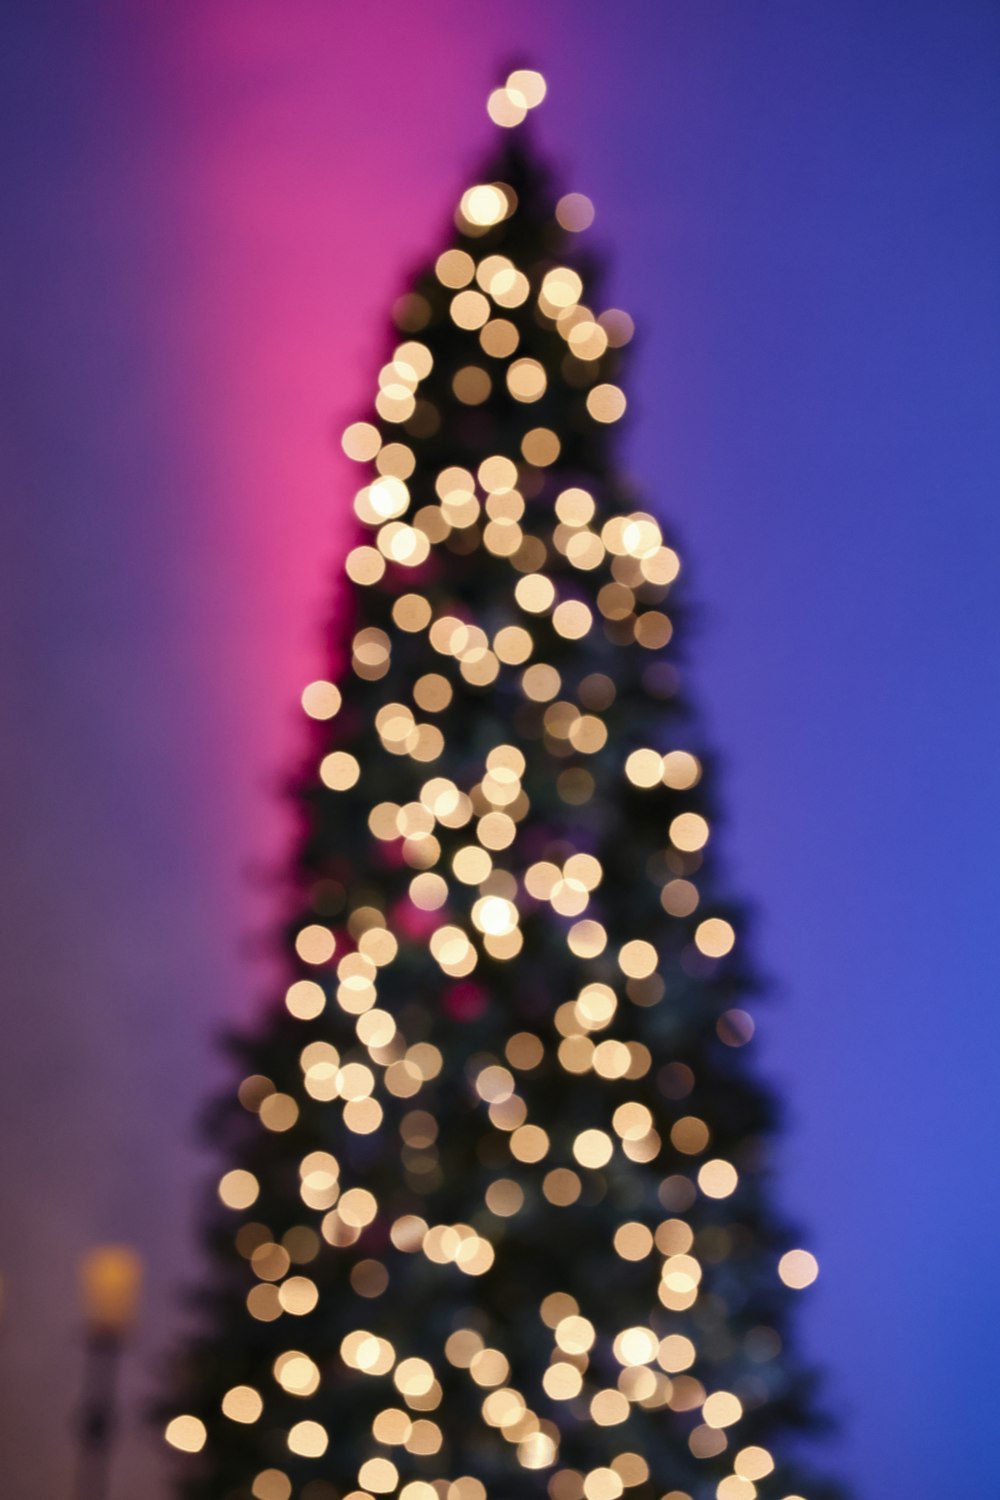 Cây thông Giáng sinh được trang trí vàng trước bầu trời màu tím: Bạn đang cần tìm một hình ảnh Giáng sinh tuyệt vời để làm hình nền cho điện thoại hay máy tính của mình? Hãy đến và xem bức ảnh của cây thông Giáng sinh được trang trí vàng trước bầu trời màu tím. Đây là một bức ảnh đầy màu sắc và tuyệt đẹp sẽ khiến bạn yêu thích ngay từ cái nhìn đầu tiên.